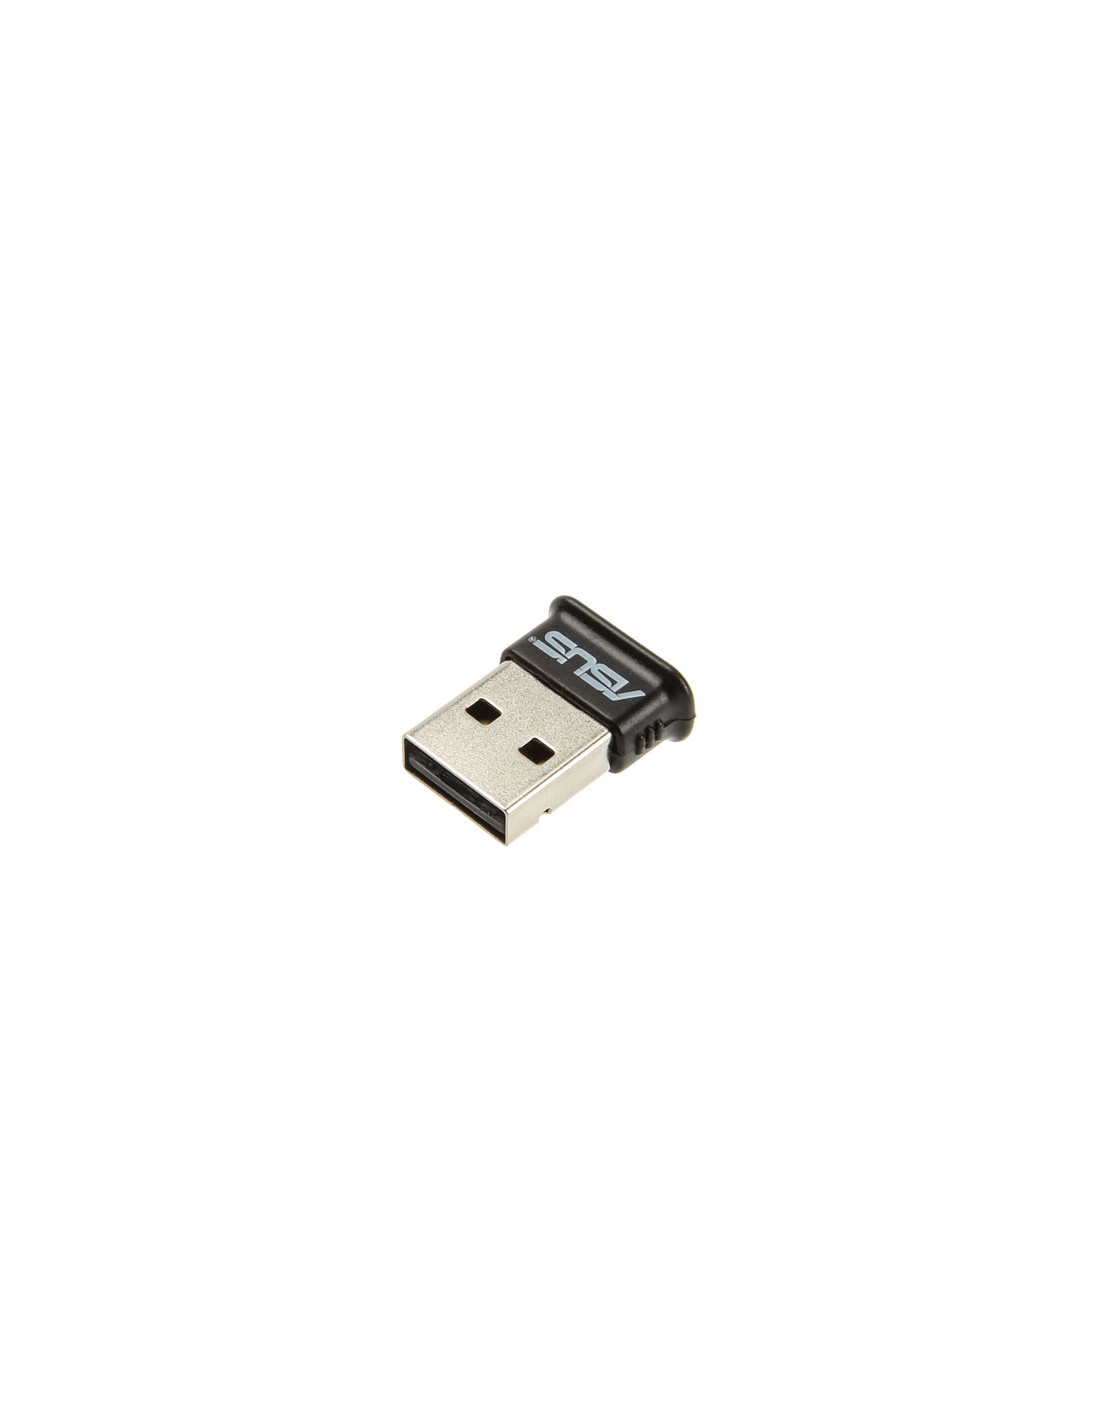 Descarte vena músico Asus Memoria USB BT400, Bluetooth 4.0